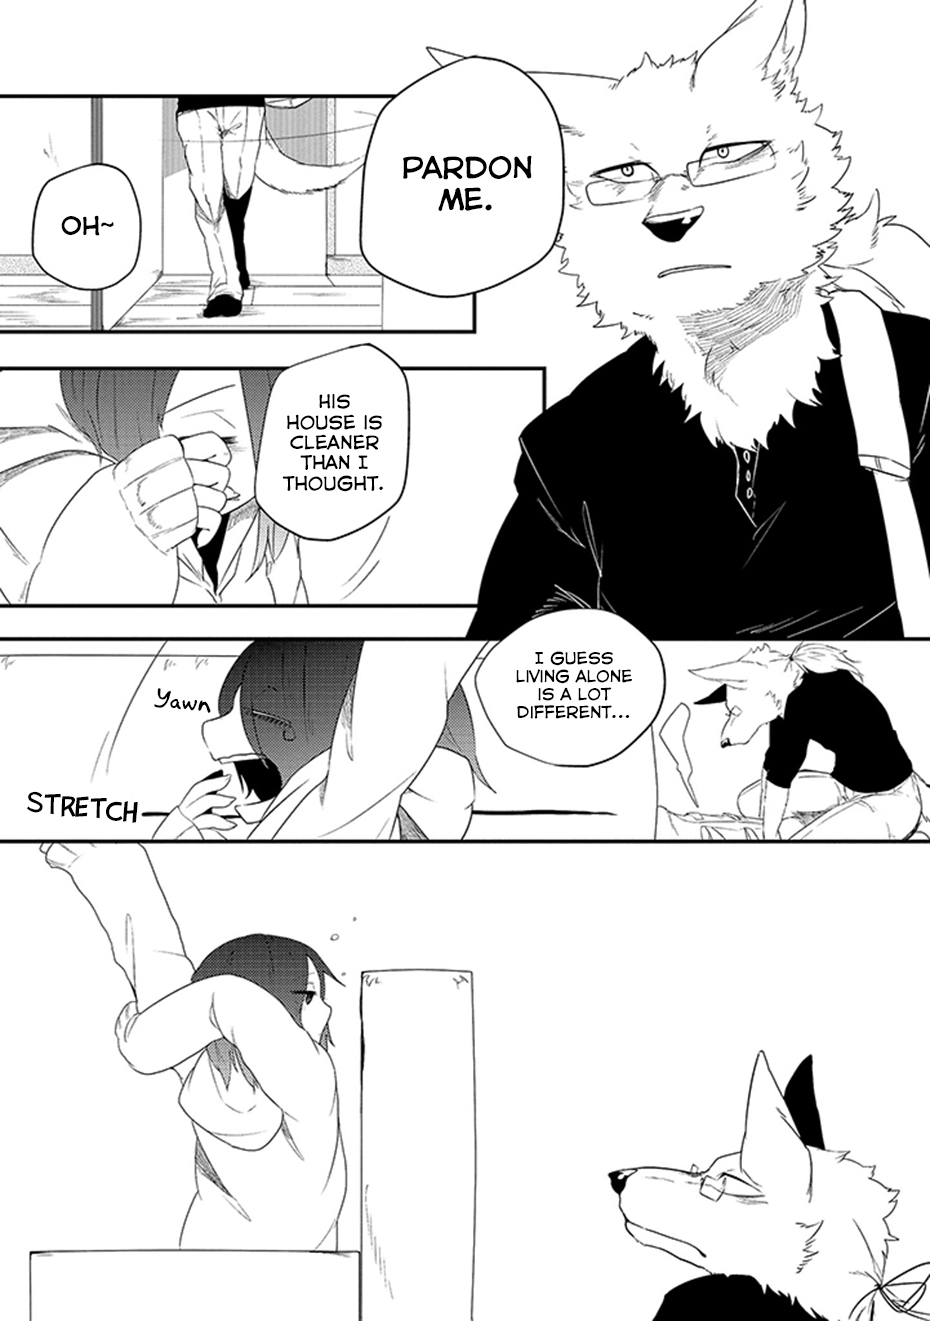 [Yakantuzura] The Beast and His Pet High School Girl Redux [English] (Updated: 7/13/15) 93